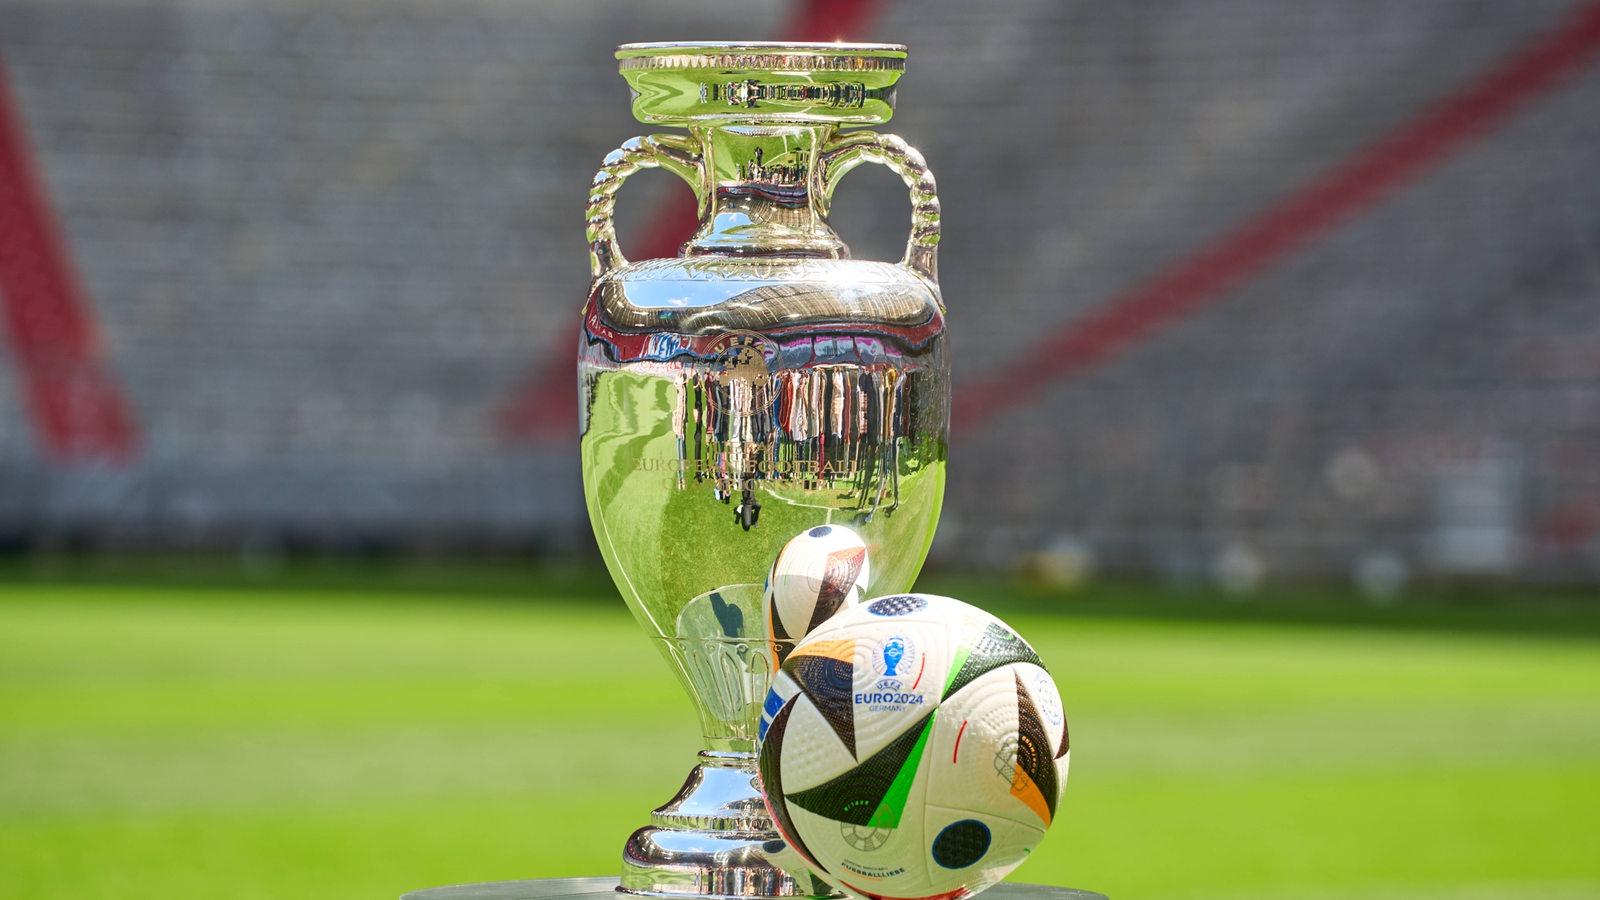 EM-Pokal und EM-Ball auf einem Tisch vor Stadionkulisse